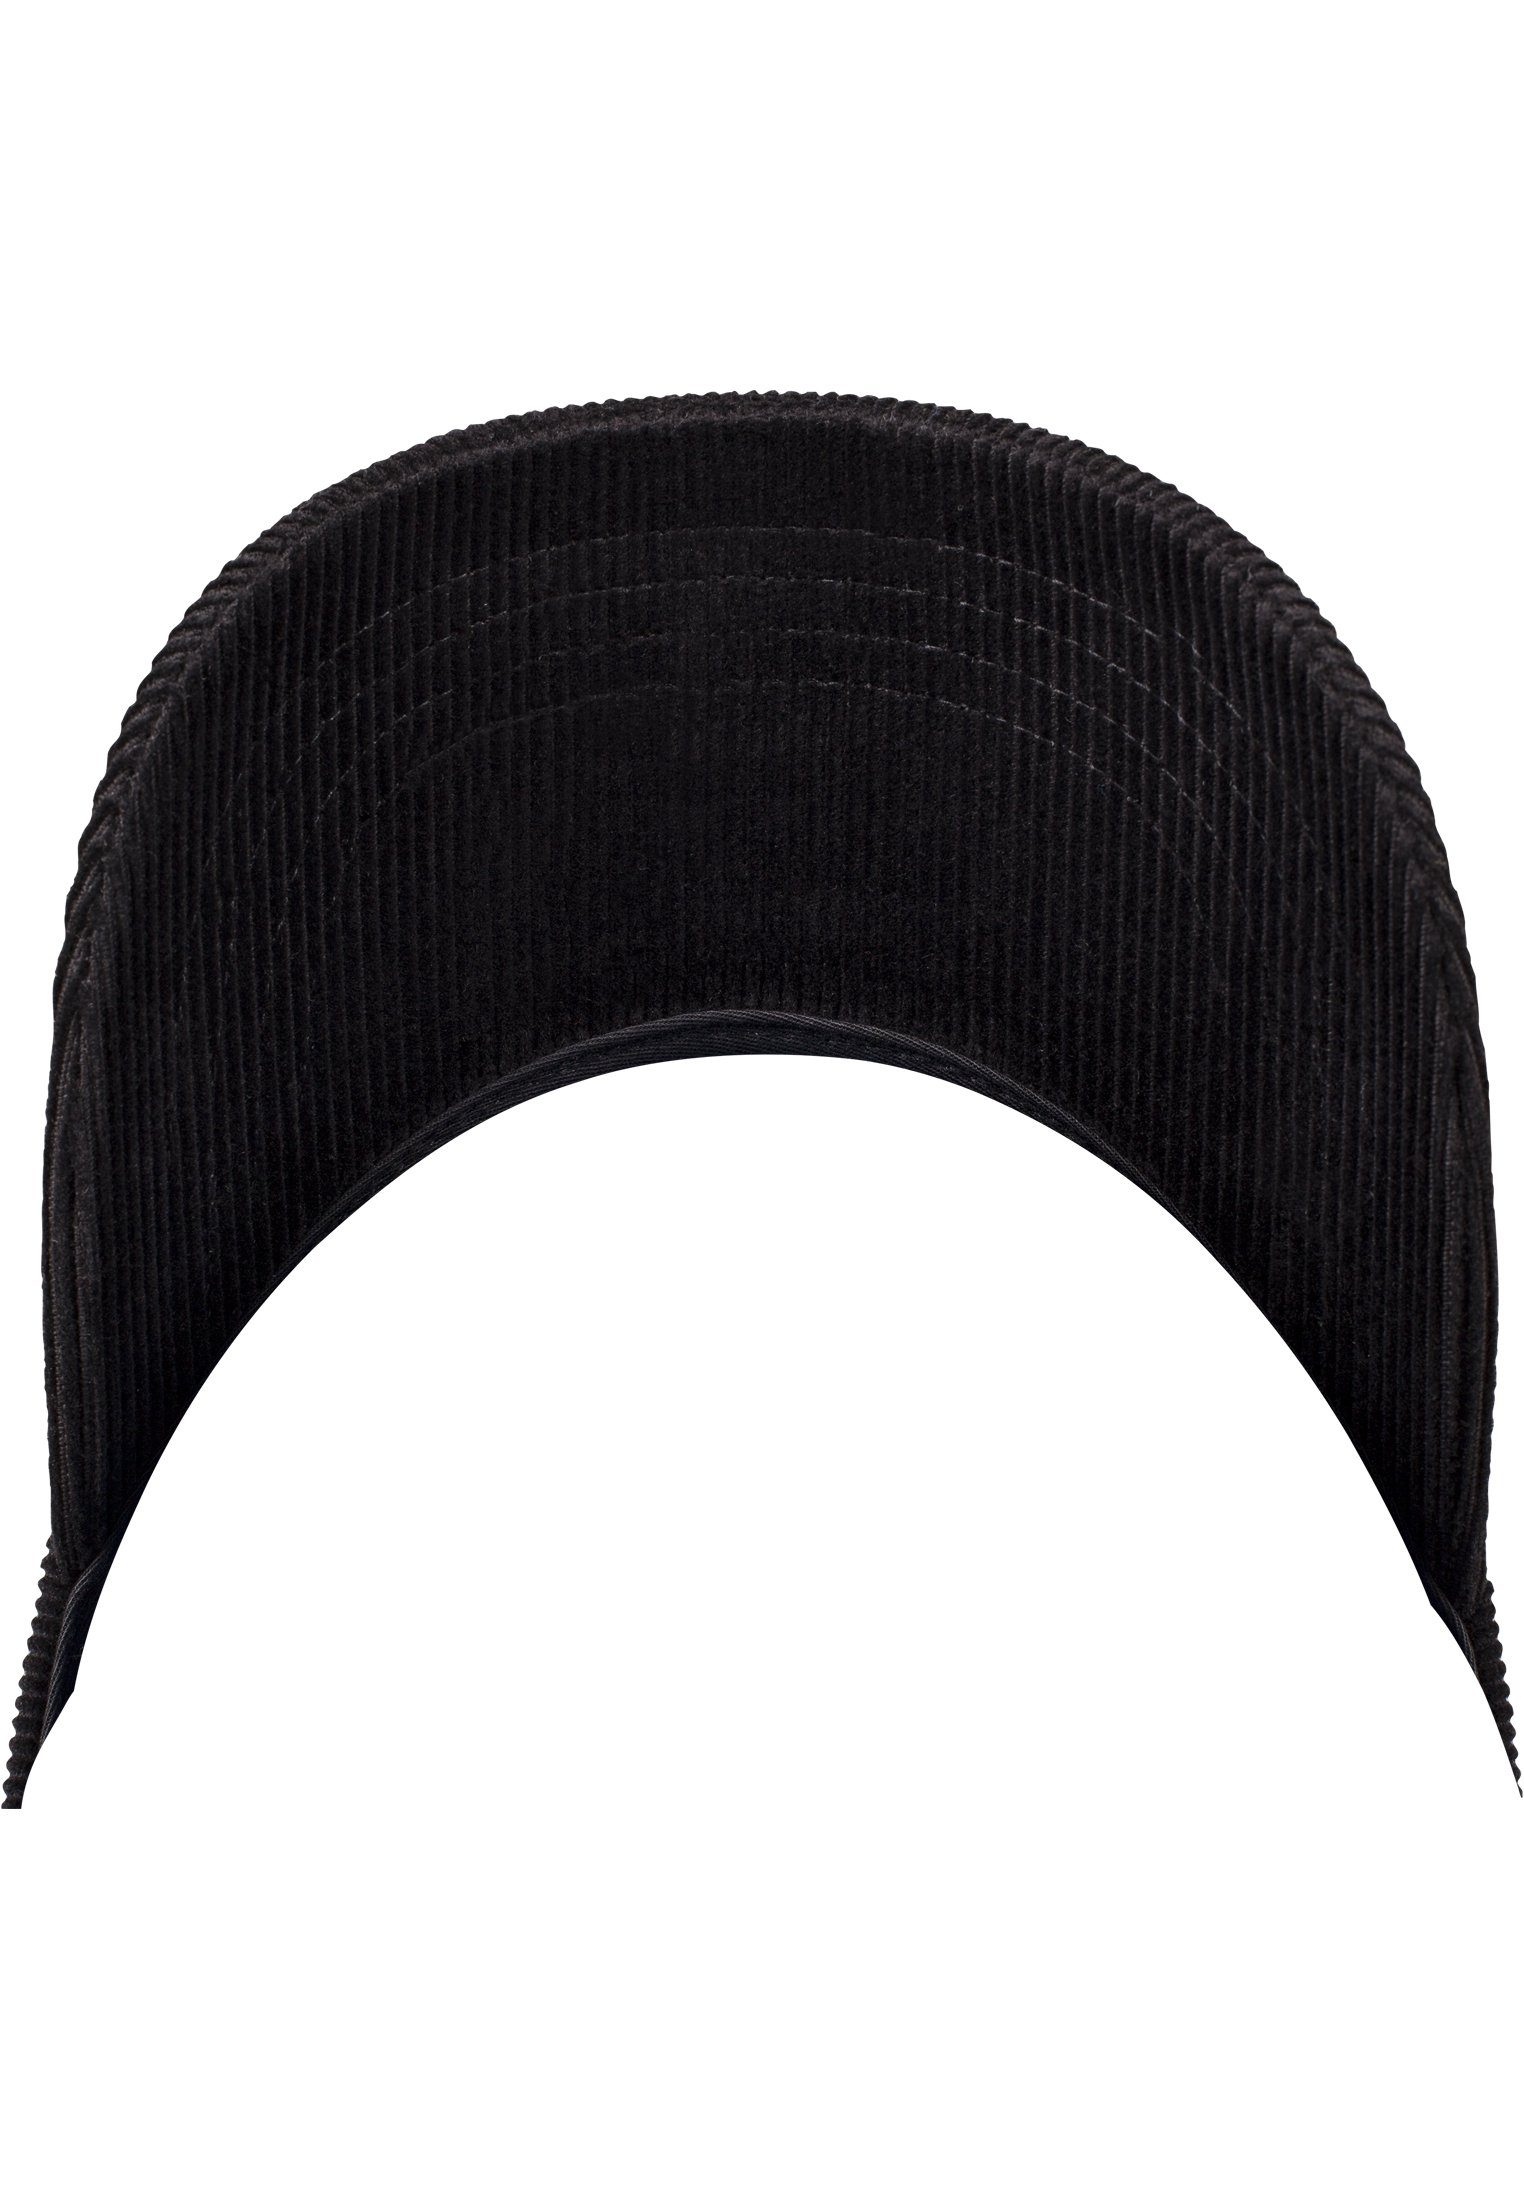 Corduroy Accessoires Flex Dad Flexfit Cap black Cap Profile Low